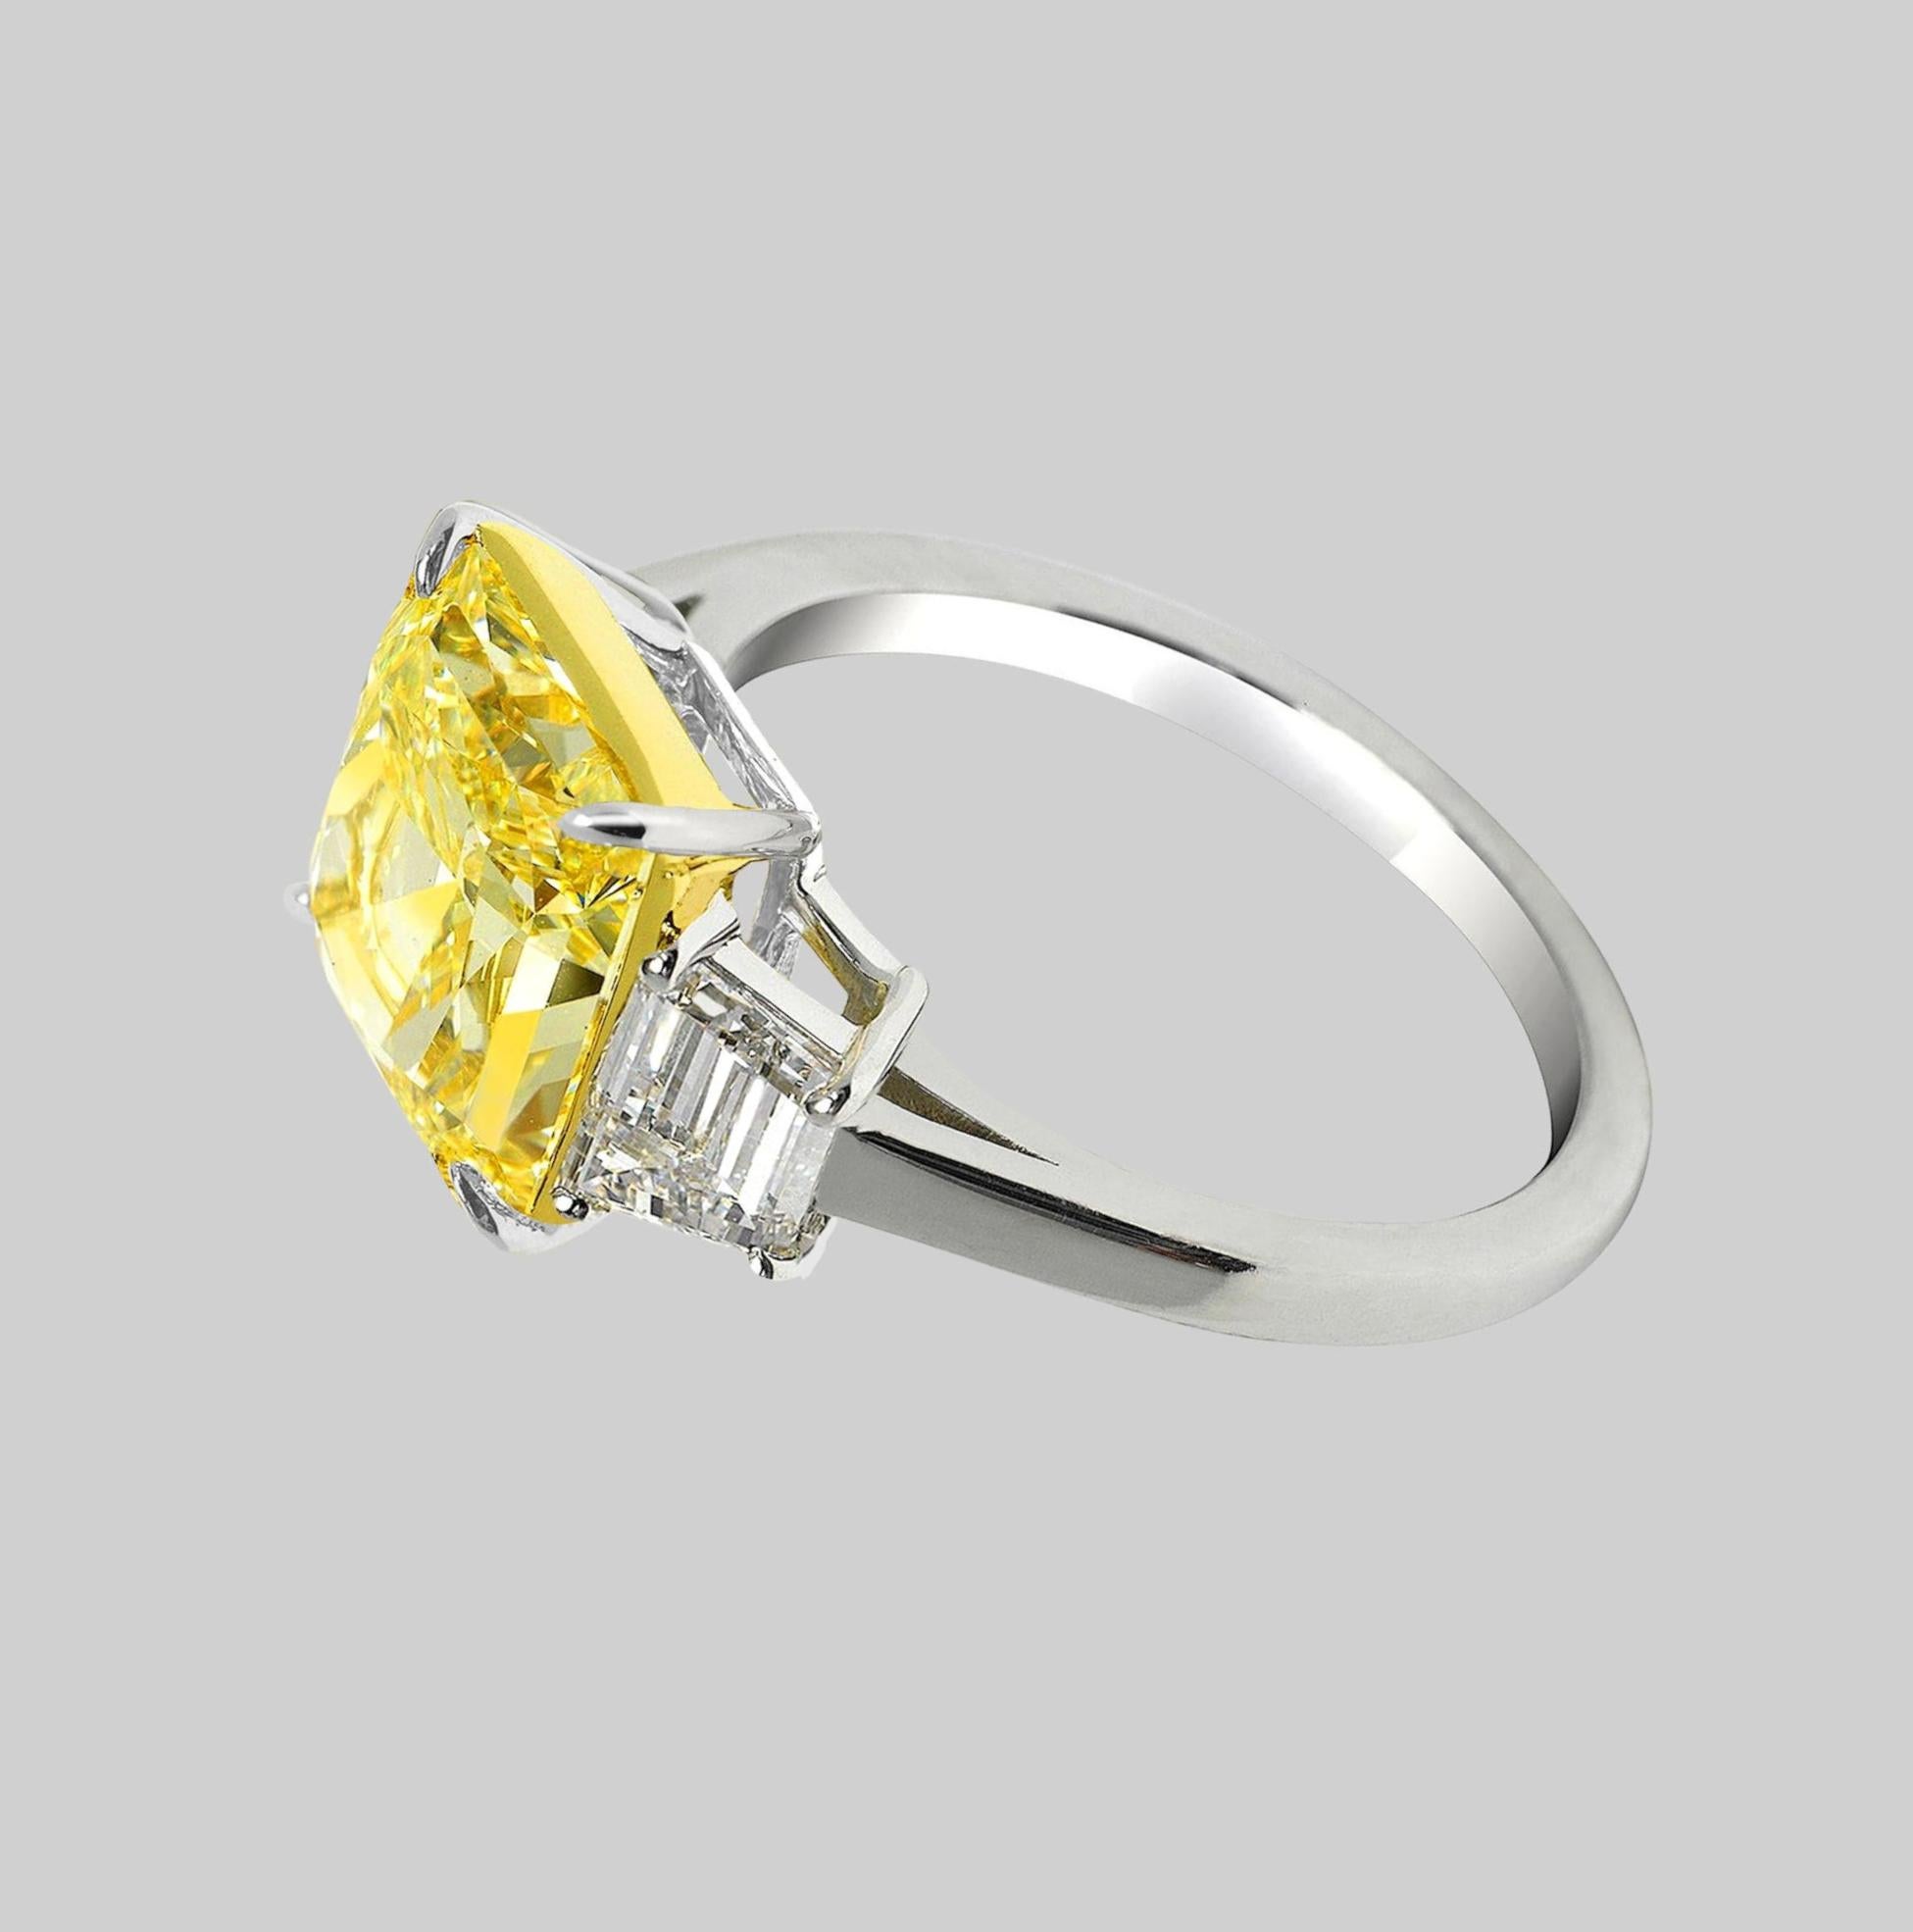 Erleben Sie die exquisite Schönheit dieses GIA-zertifizierten 7-karätigen Fancy Intense Yellow Radiant Diamantrings. Die intensive gelbe Farbe des Diamanten, gepaart mit seiner lupenreinen Reinheit (IF), verleiht ihm eine fesselnde und zeitlose